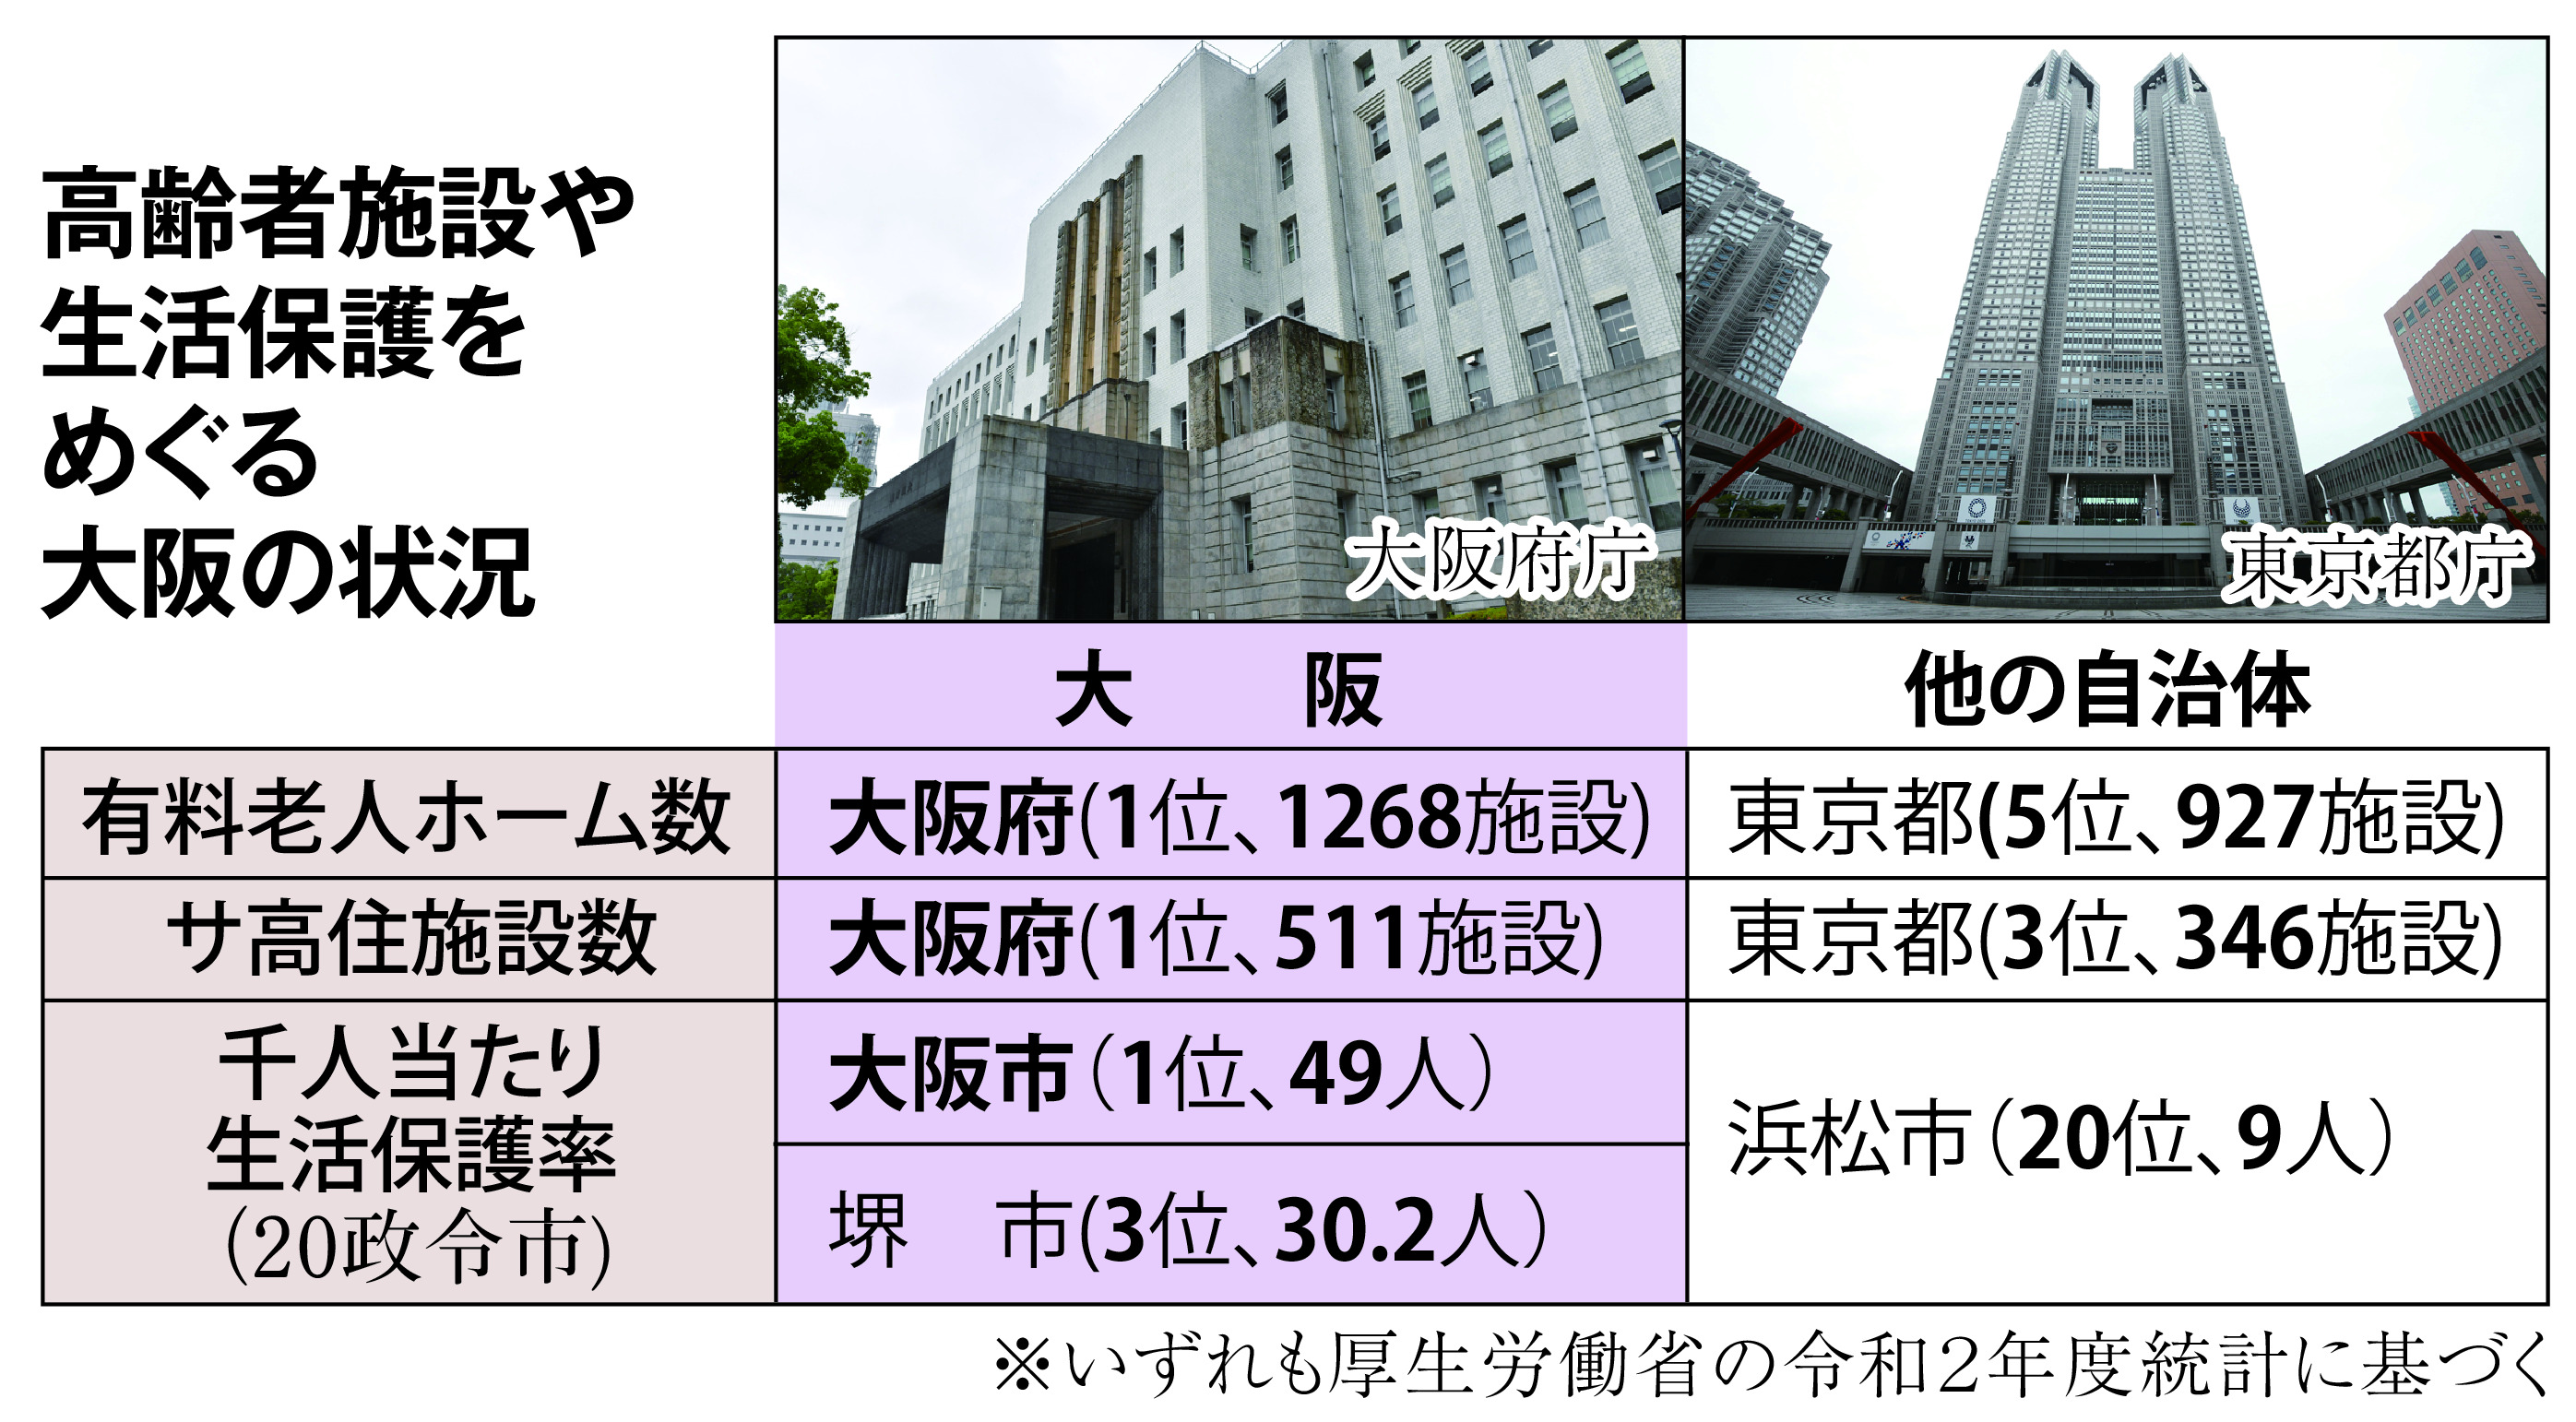 コロナ第６波で死者数が際立つ大阪の事情 - 産経ニュース